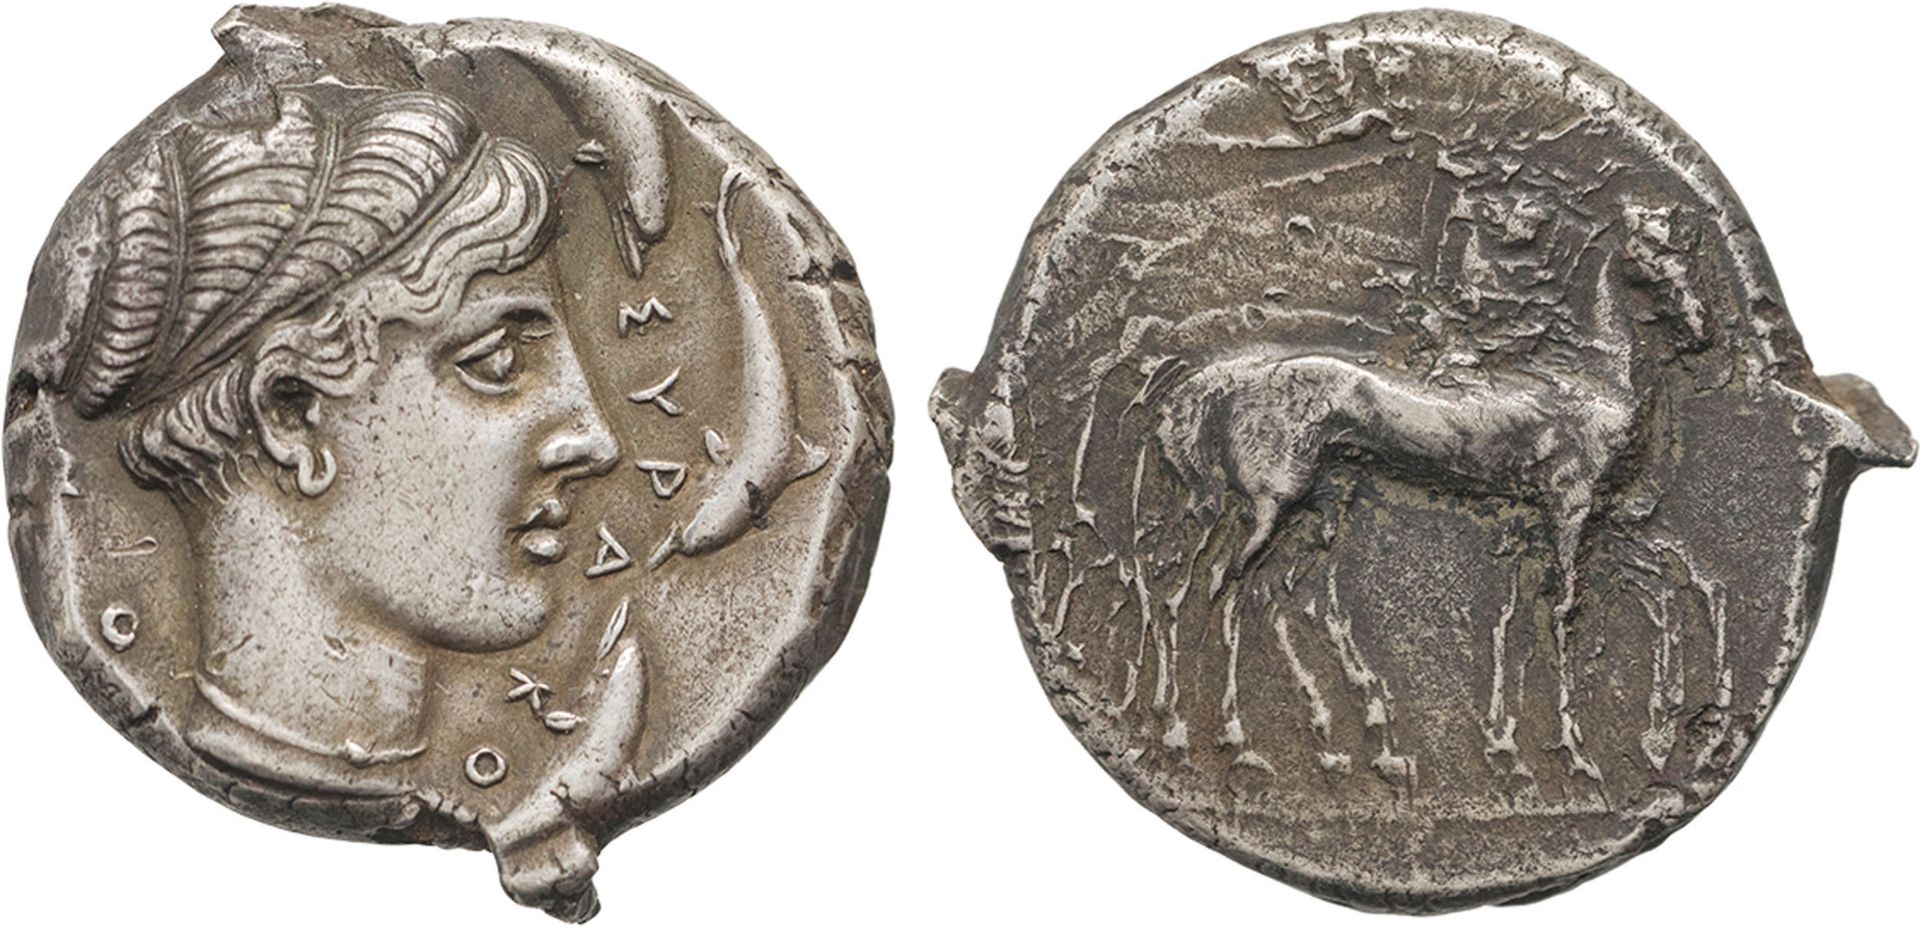 MONETE GRECHE. SICILIA. SIRACUSA (430-420 A.C.). TETRADRACMA